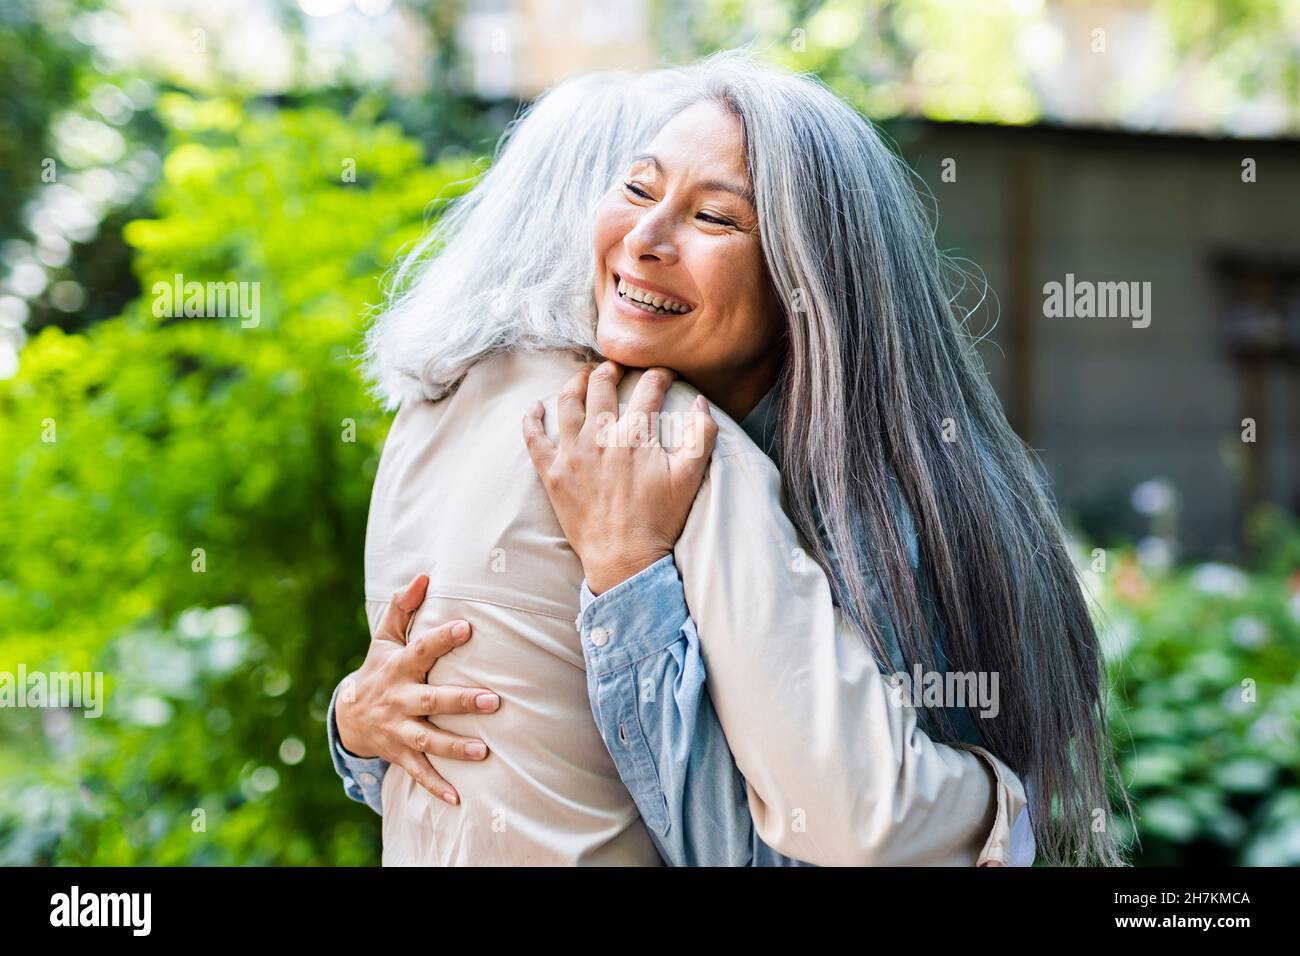 Femmes matures avec de longs cheveux qui embrasent l'amie femelle Banque D'Images